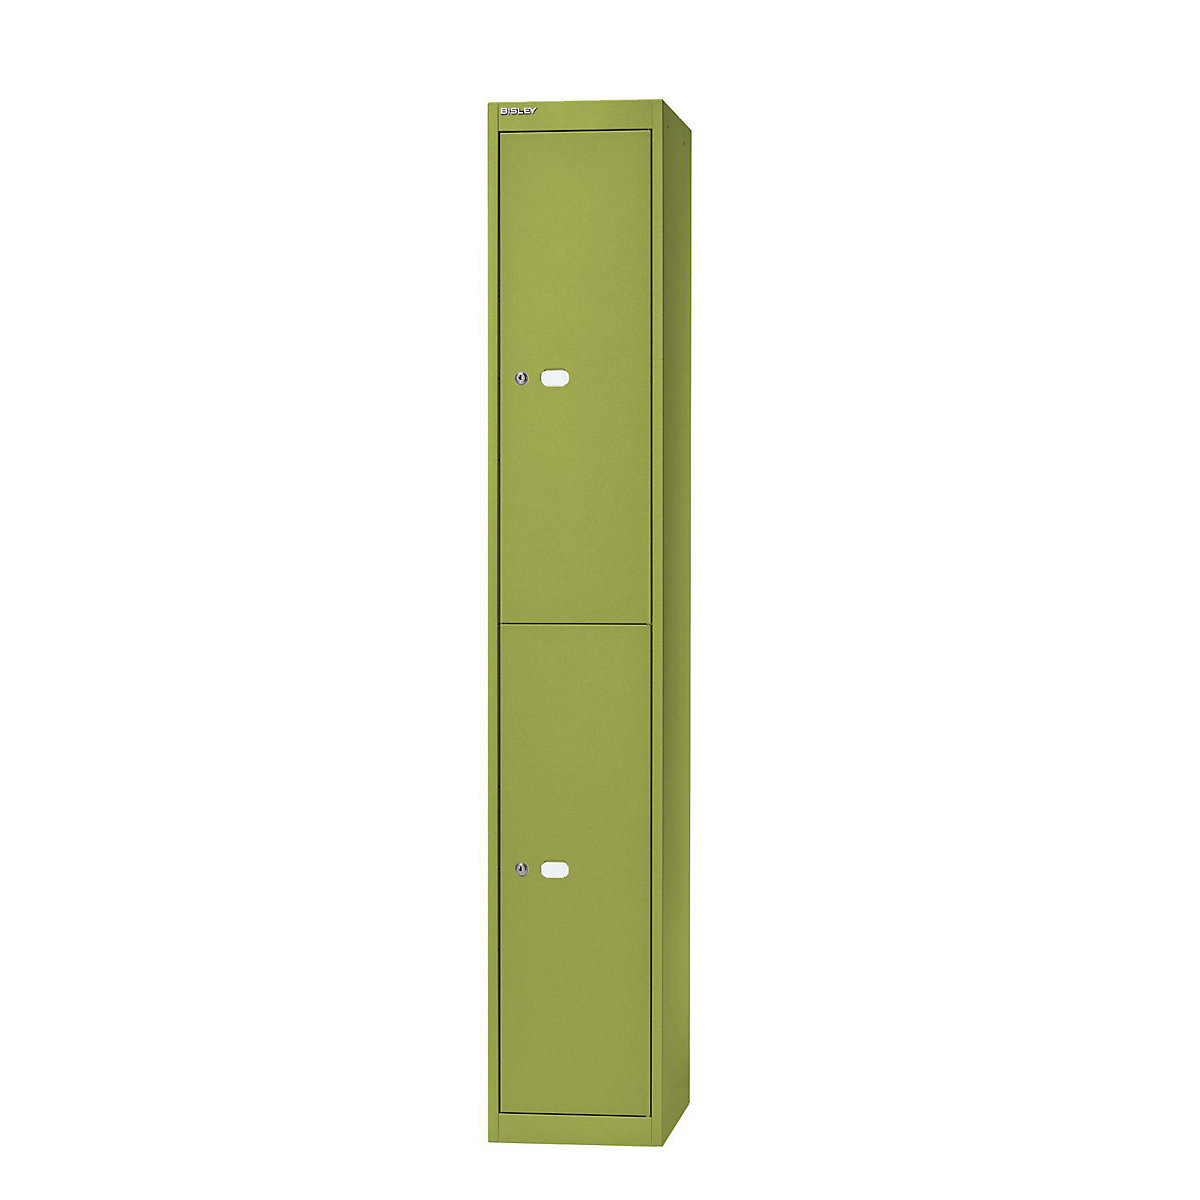 BISLEY OFFICE Garderobensystem, Tiefe 457 mm, 2 Fächer mit je 1 Kleiderhaken, grün